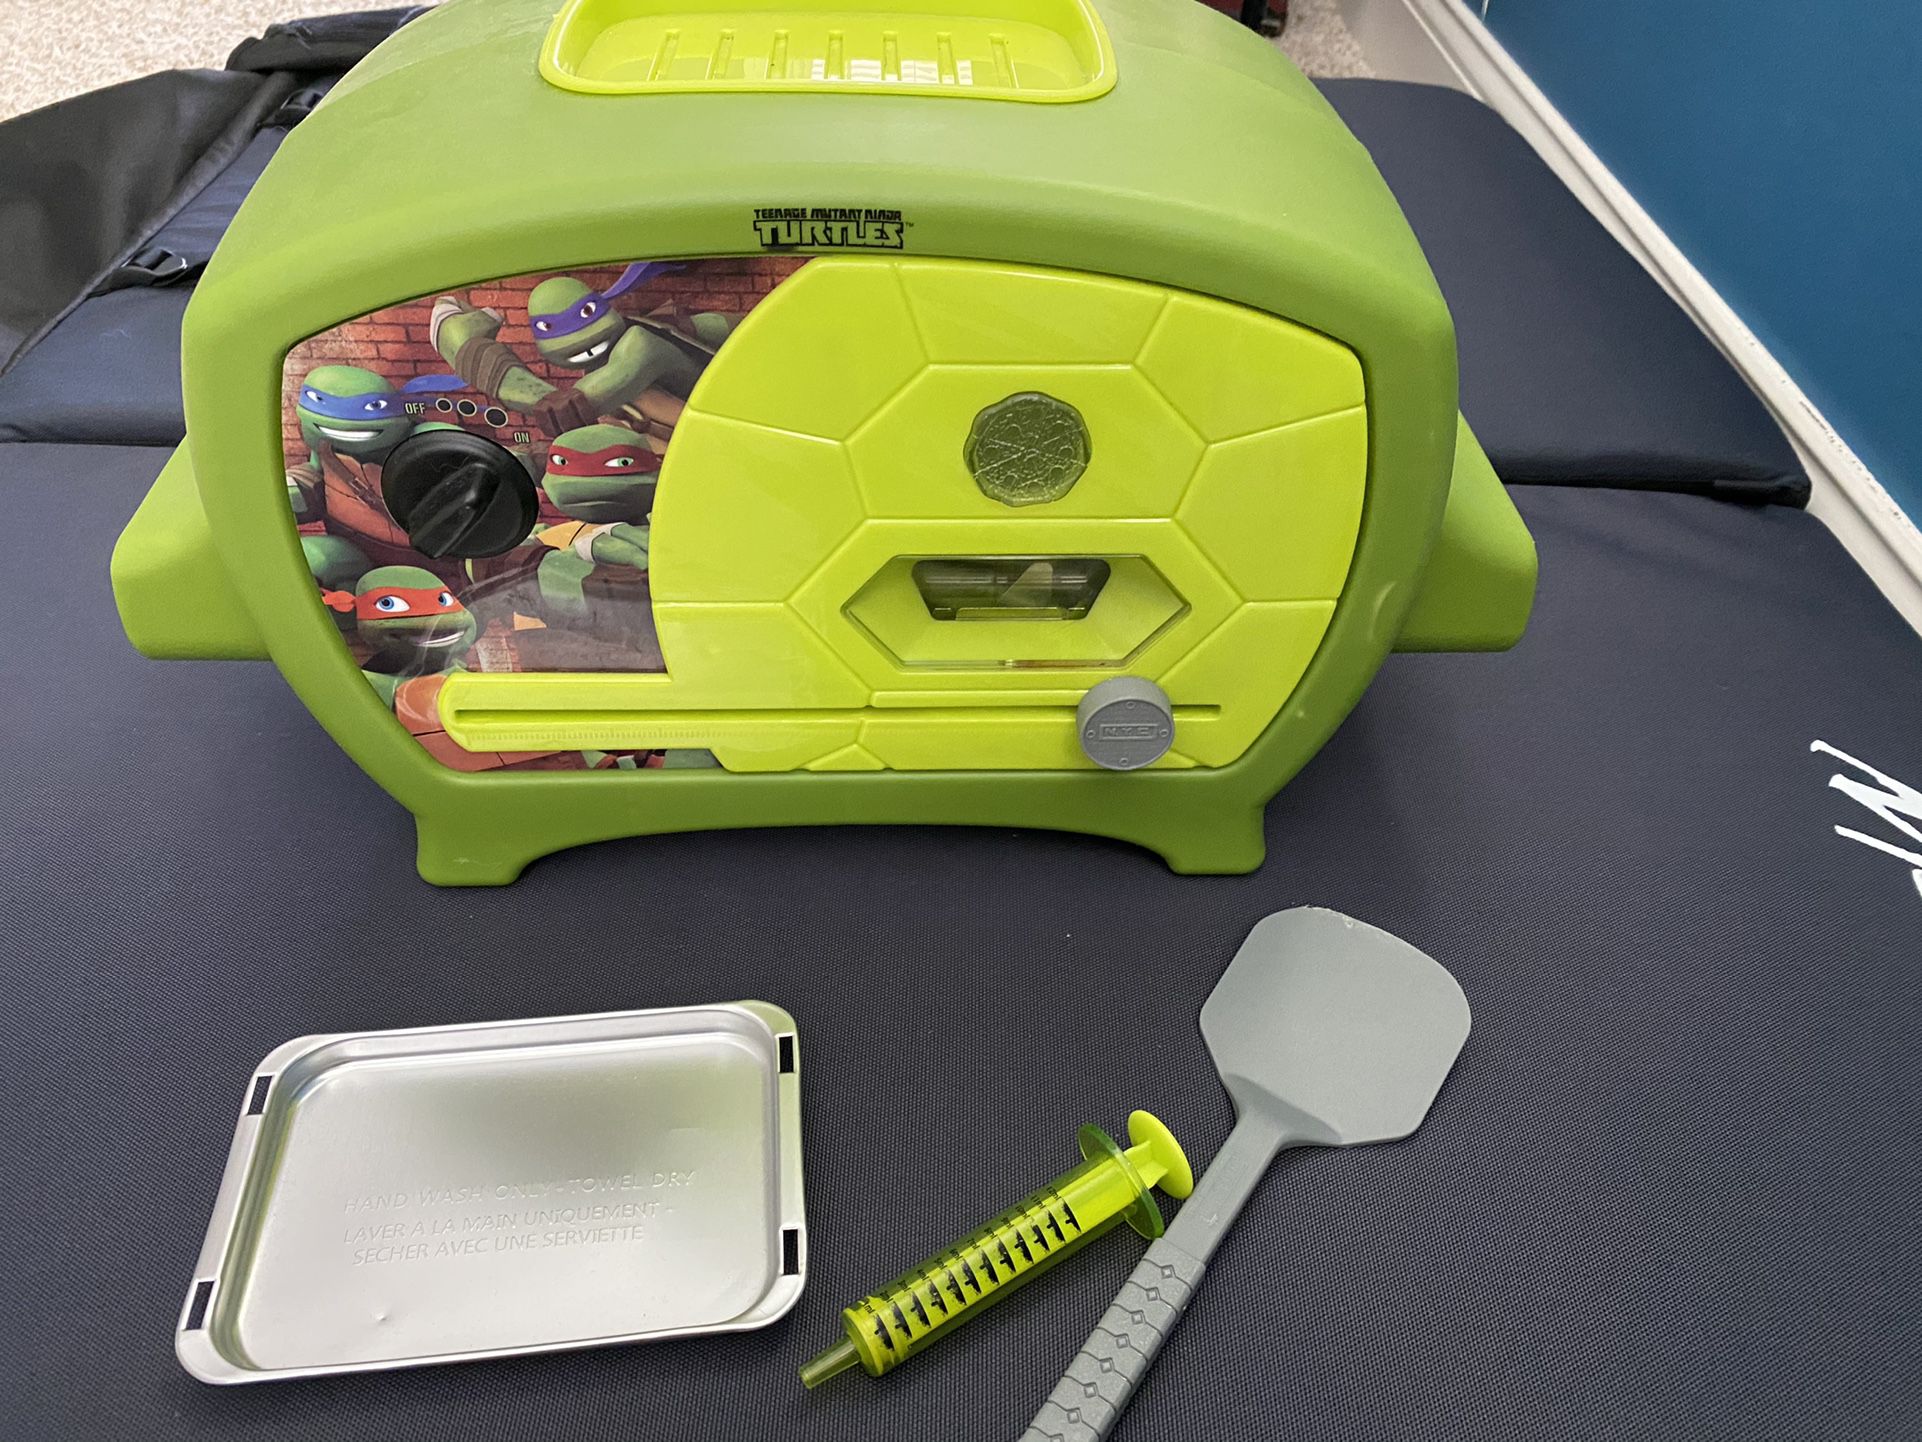 Teenage Mutant Ninja Turtles Pizza Oven Toys For Kids 